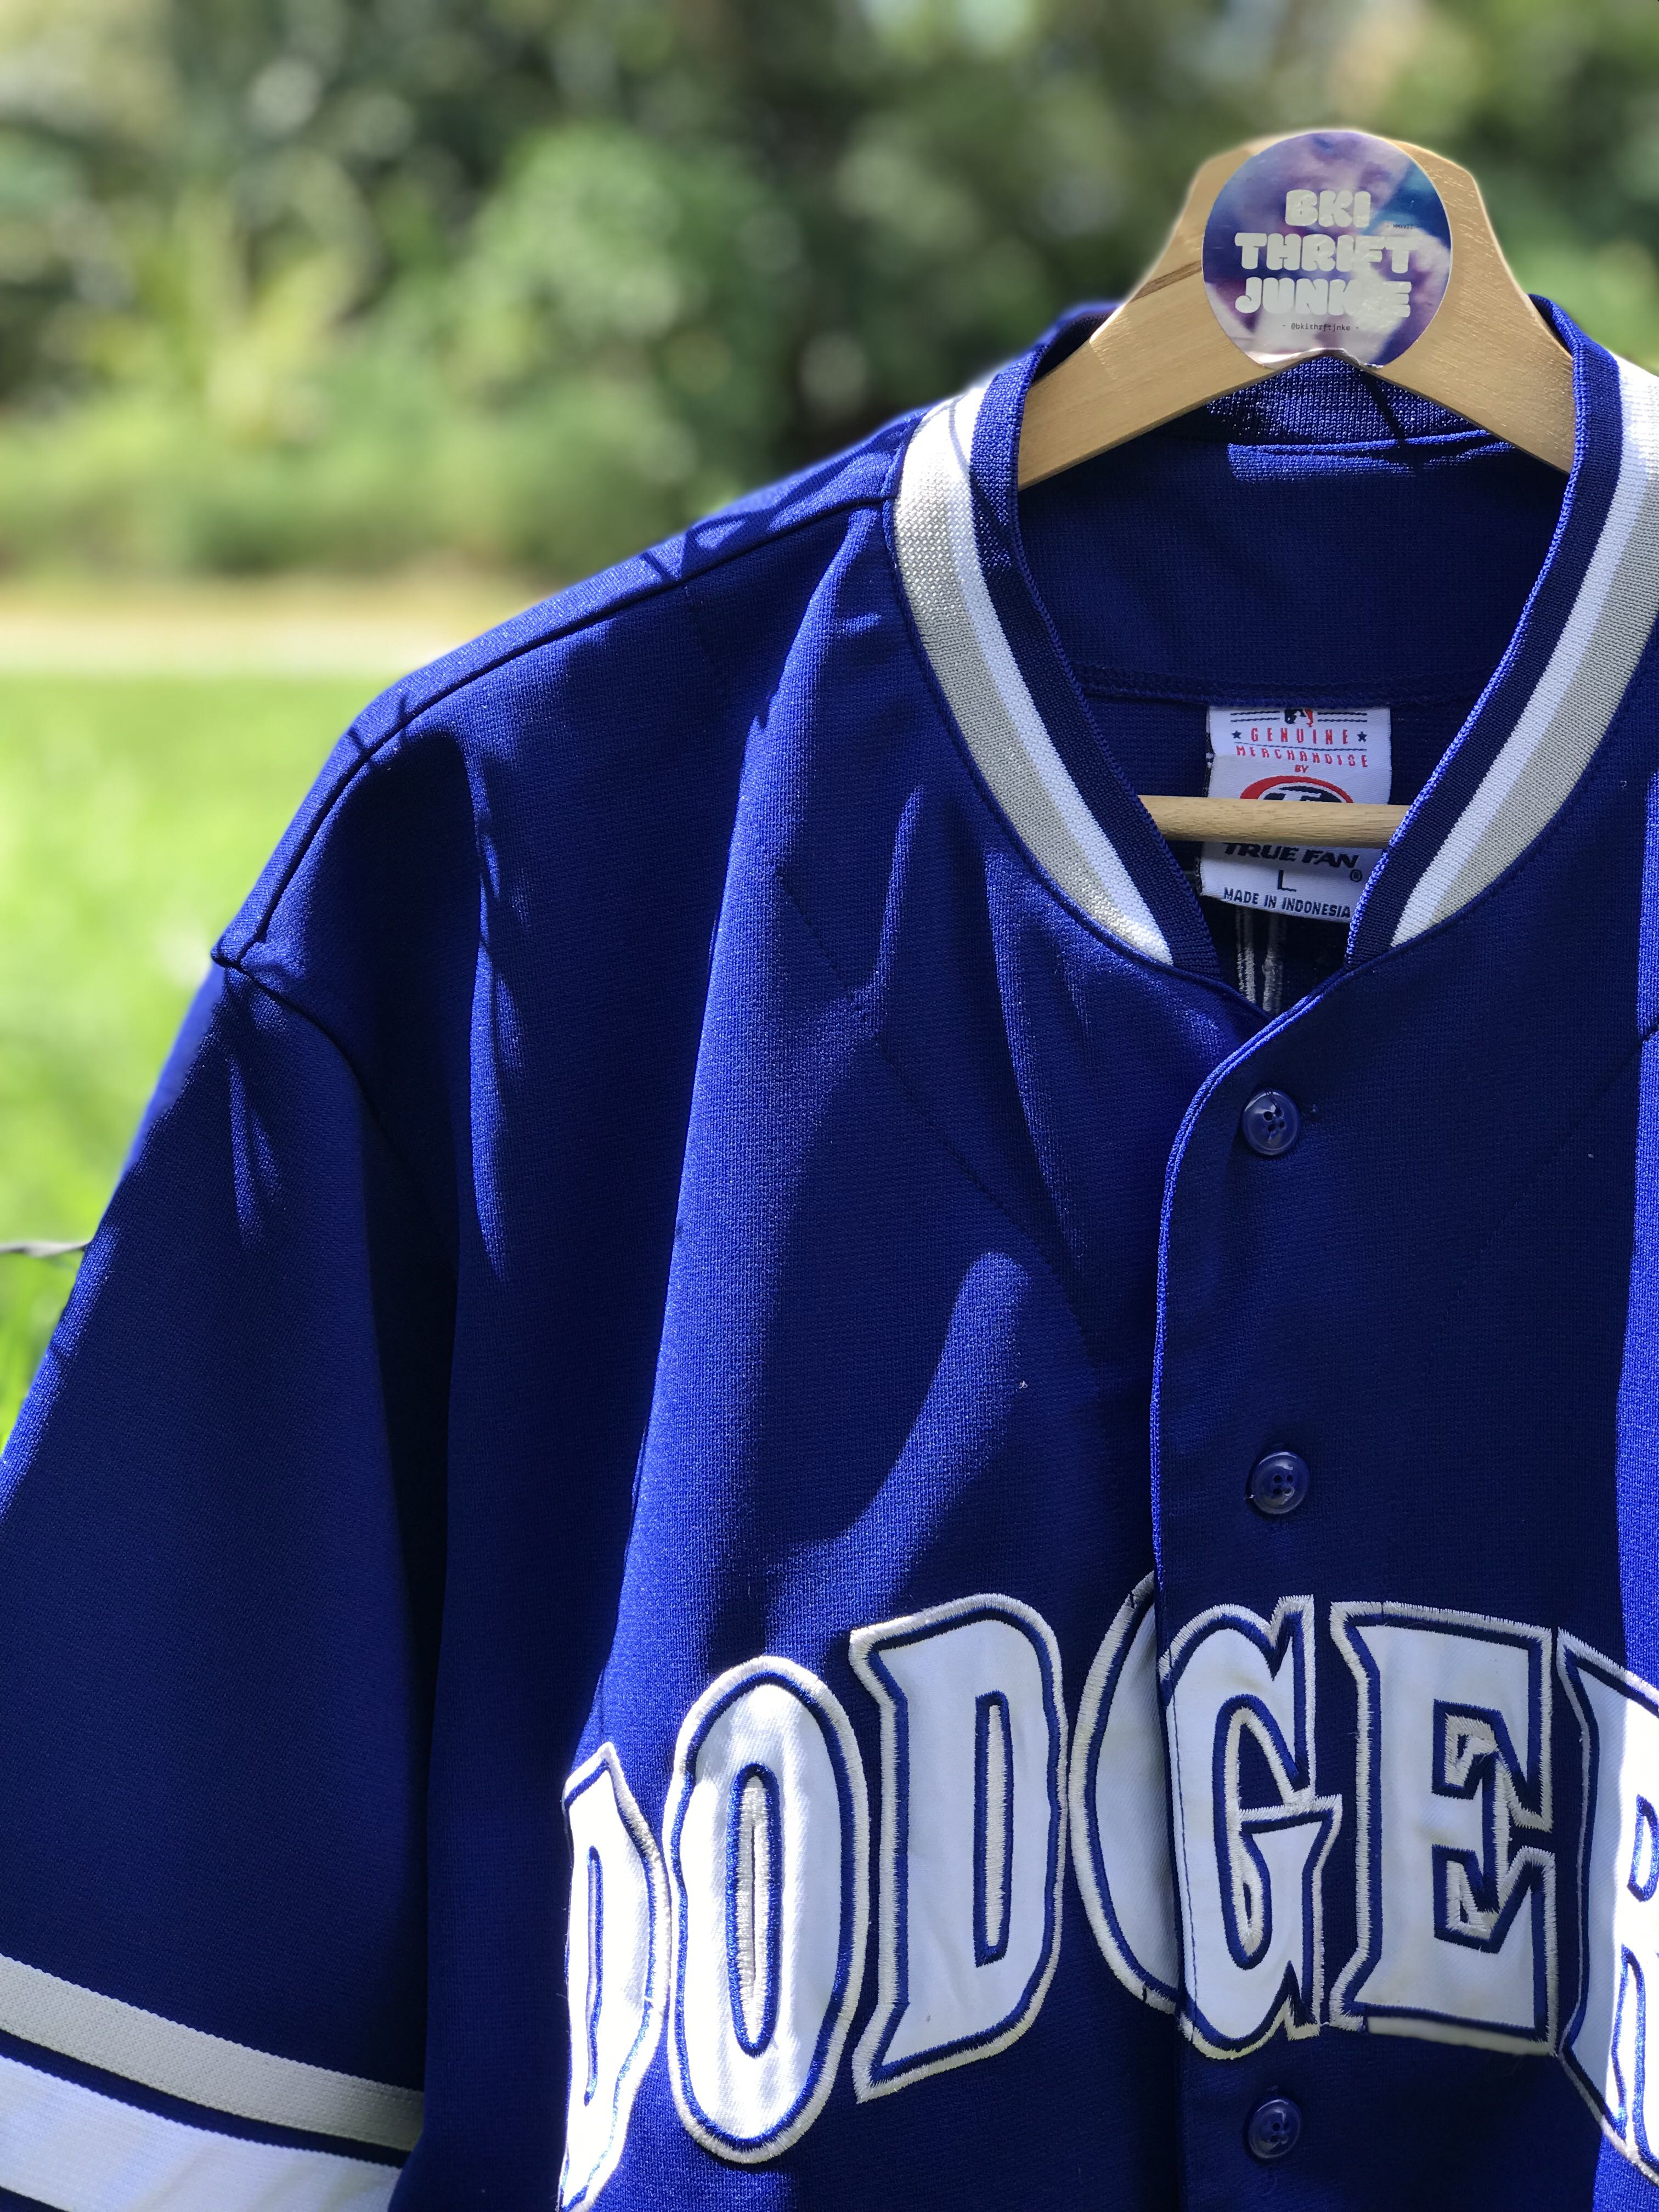 LOS ANGELES DODGERS blue baseball jersey TRUE FAN men's M NOMAR